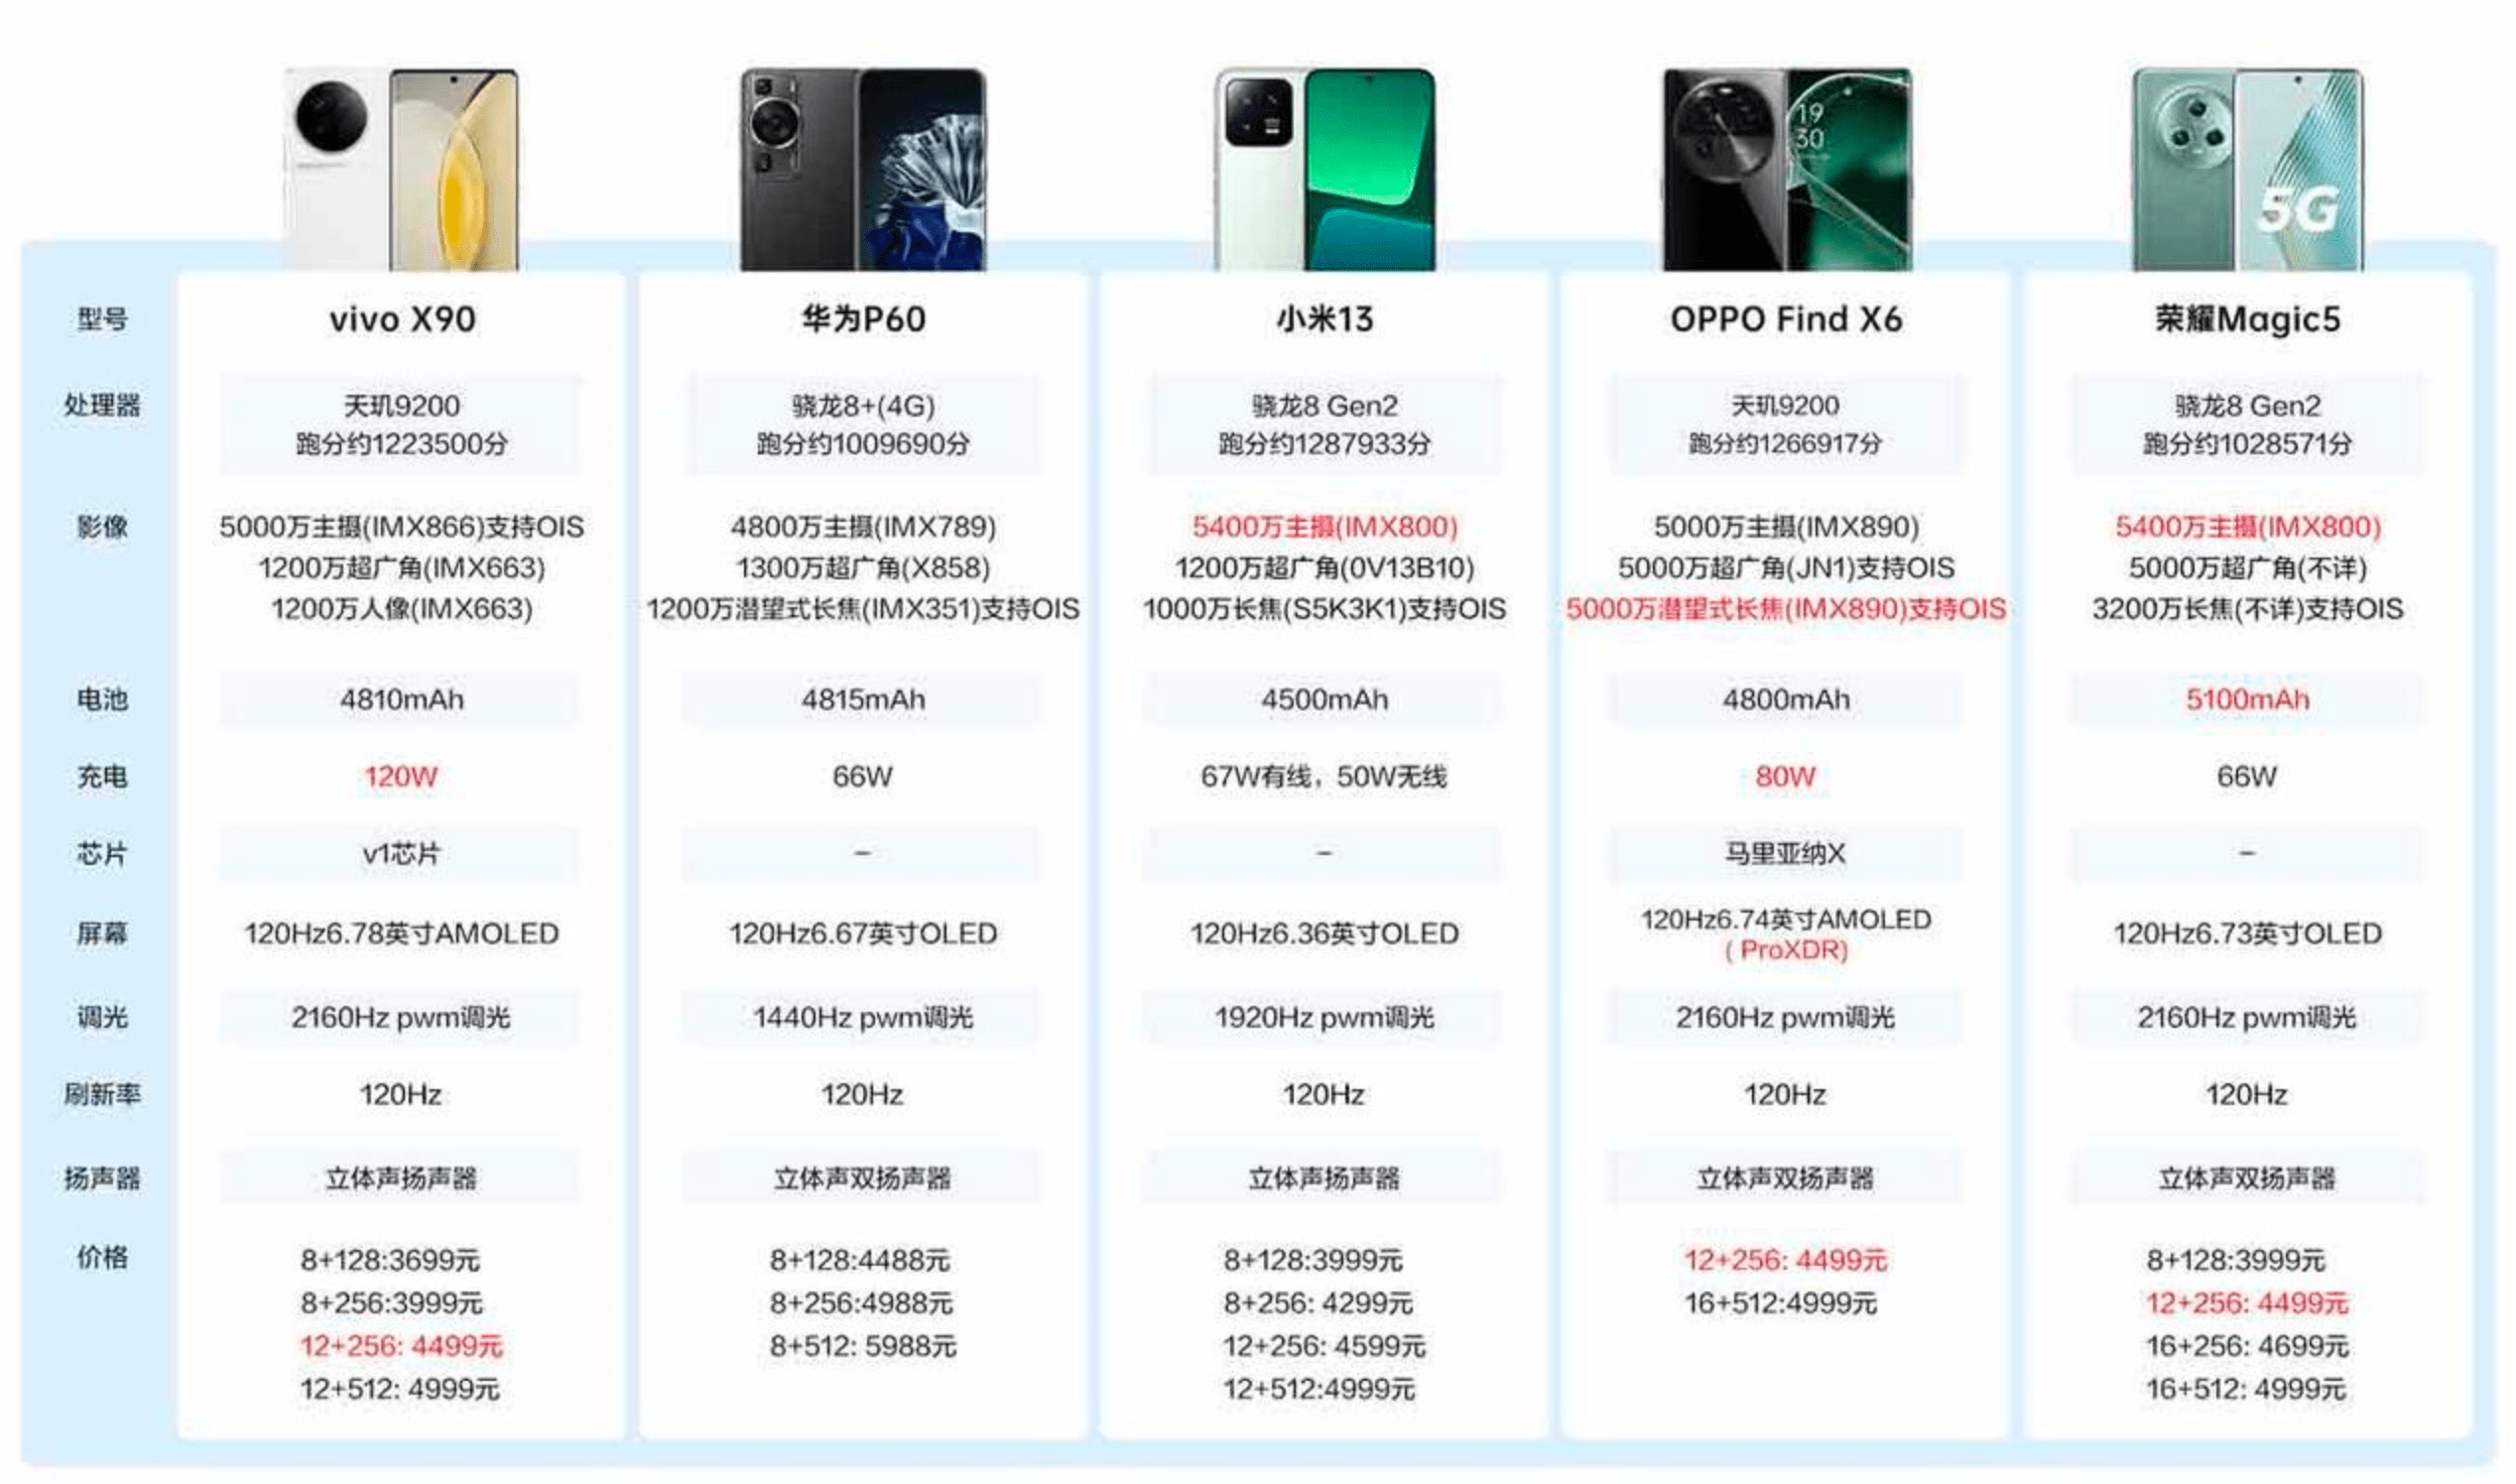 汕头换装游戏推荐苹果版:4000元预算入手哪款手机最值？行家一致推荐OPPO Find X6